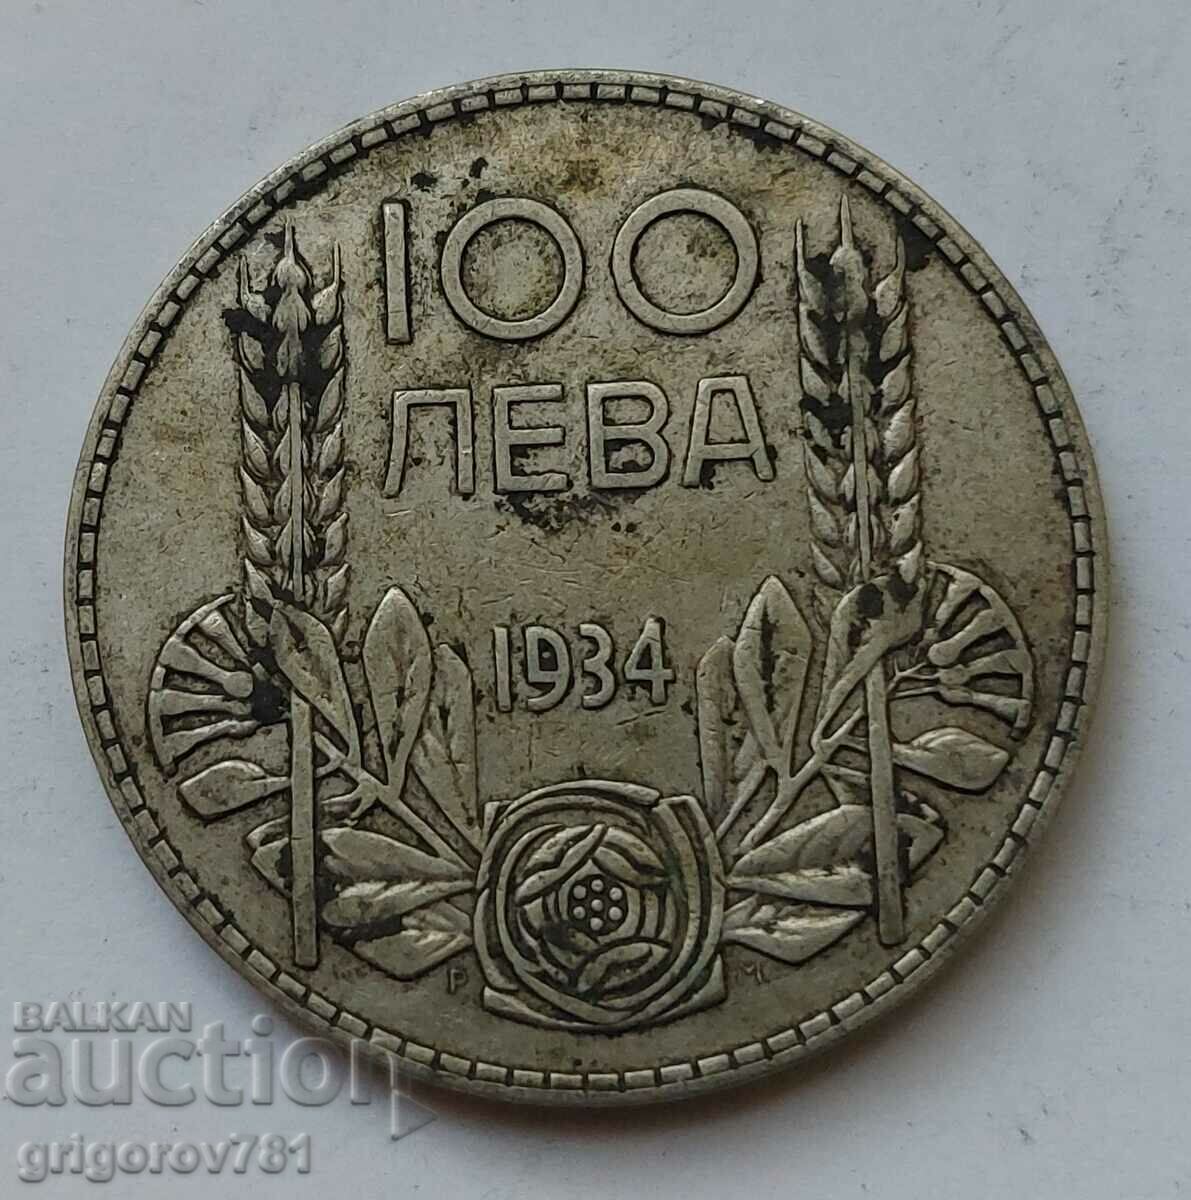 Ασήμι 100 λέβα Βουλγαρία 1934 - ασημένιο νόμισμα #53